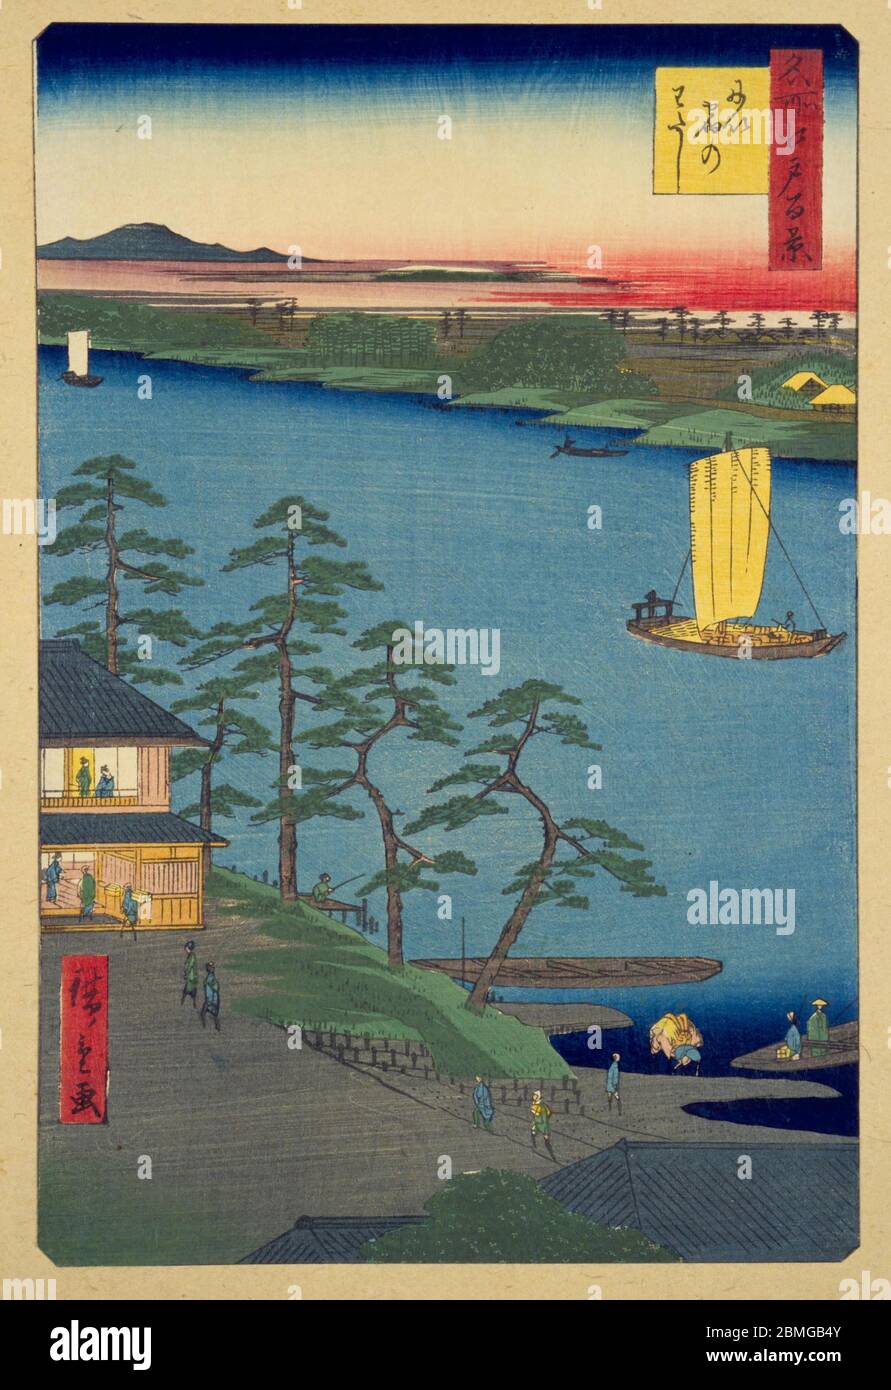 [ 1850er Japan - Nakagawa River Ferry ] - Fährüberfahrt am Nakagawa River (中川) in Edo (heute Tokio), 1857 (Ansei 4). Dieser Holzschnitt ist Bild 93 in hundert berühmten Ansichten von Edo (名所江戸百景, Meisho Edo Hyakkei), einer Serie von Ukiyoe Künstler Utagawa Hiroshige (歌川広重, 1797–1858) erstellt. Es ist eine von 26 Herbstszenen der Serie. Titel: Niijuku Ferry (にい宿のわたし, Niijuku no watashi) Vintage Ukiyoe Holzschnitt aus dem 19. Jahrhundert. Stockfoto